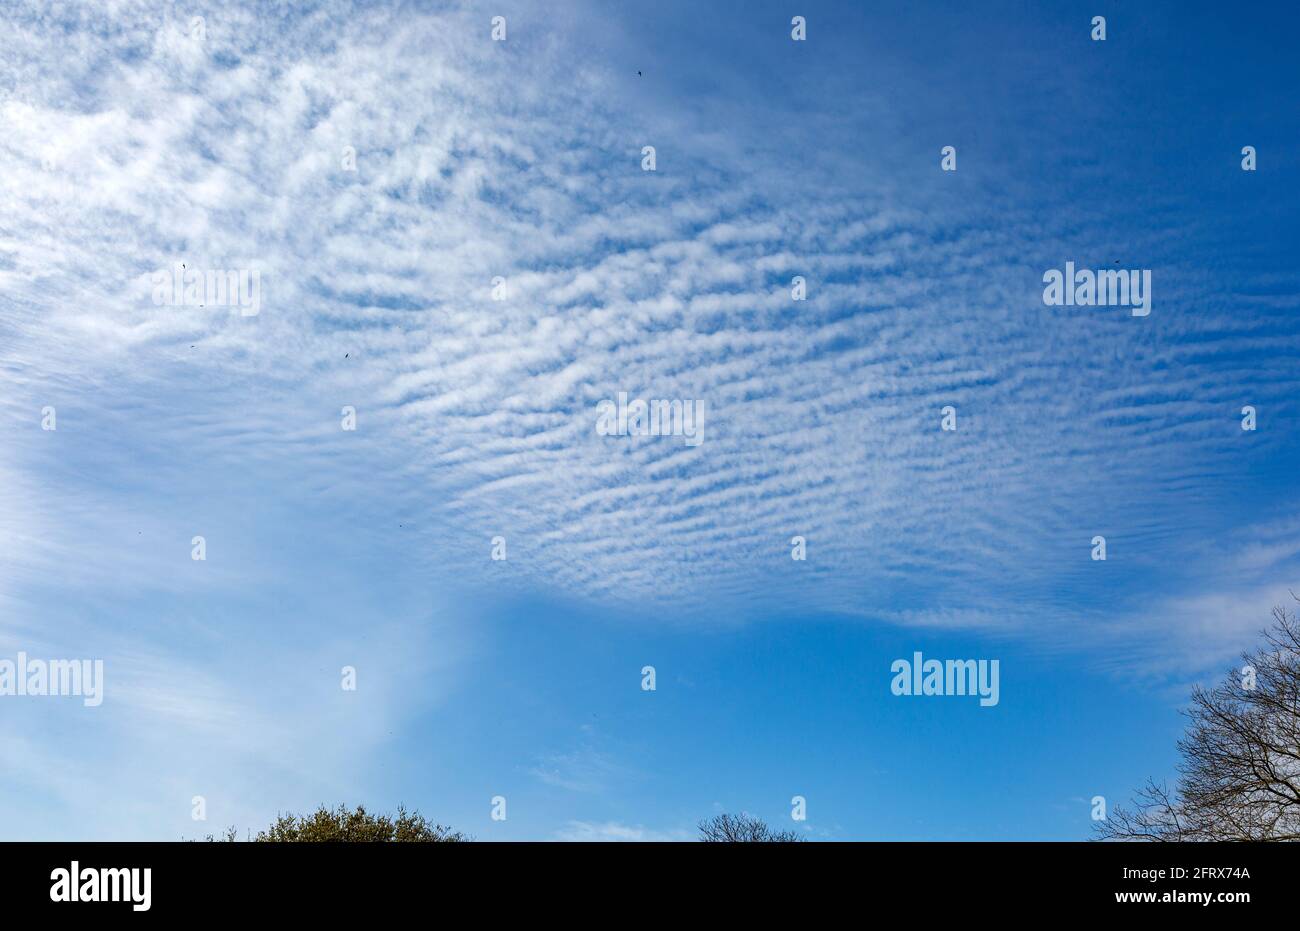 Maquereau formation de nuages de ciel, Suffolk, Angleterre, Royaume-Uni cirocumulus ou altocumulus nuages Banque D'Images